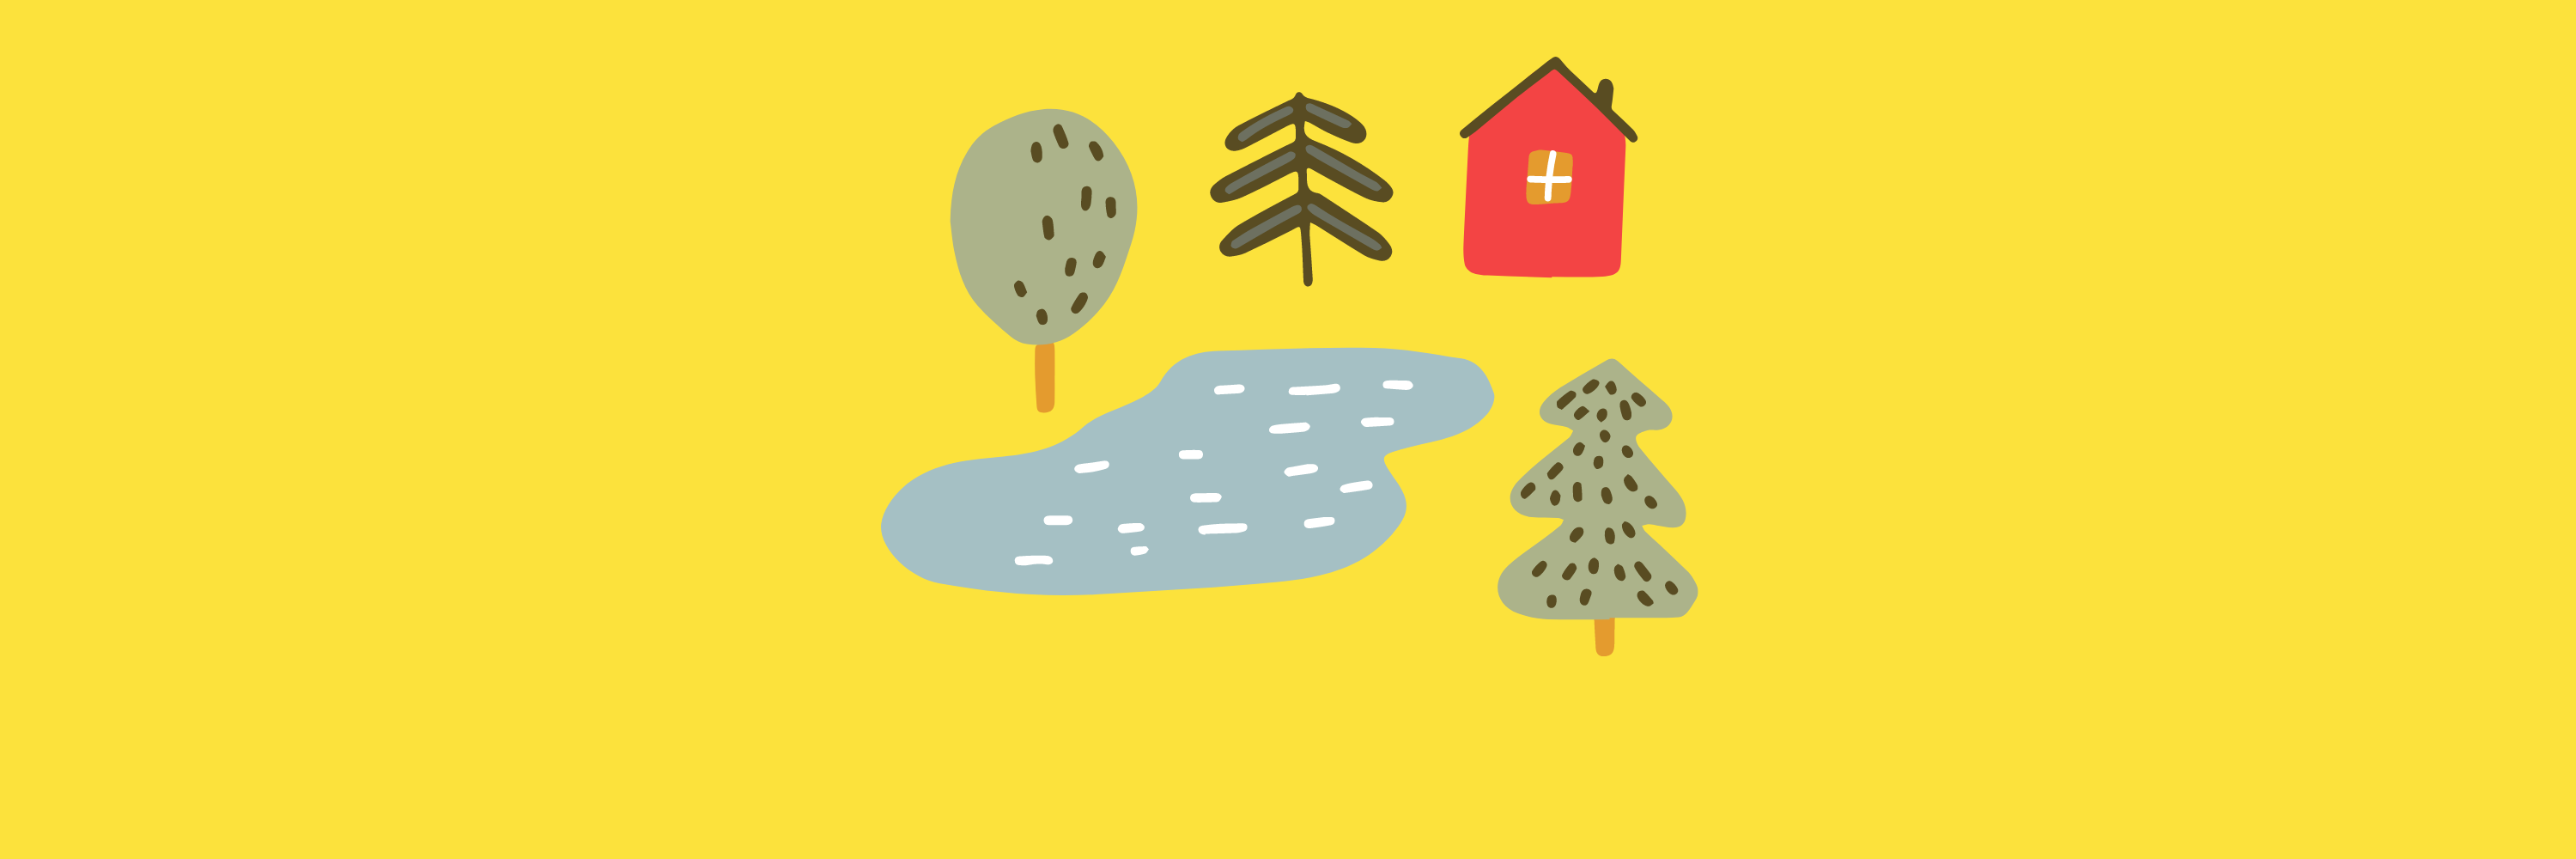 Virtual retreat icon on yellow background